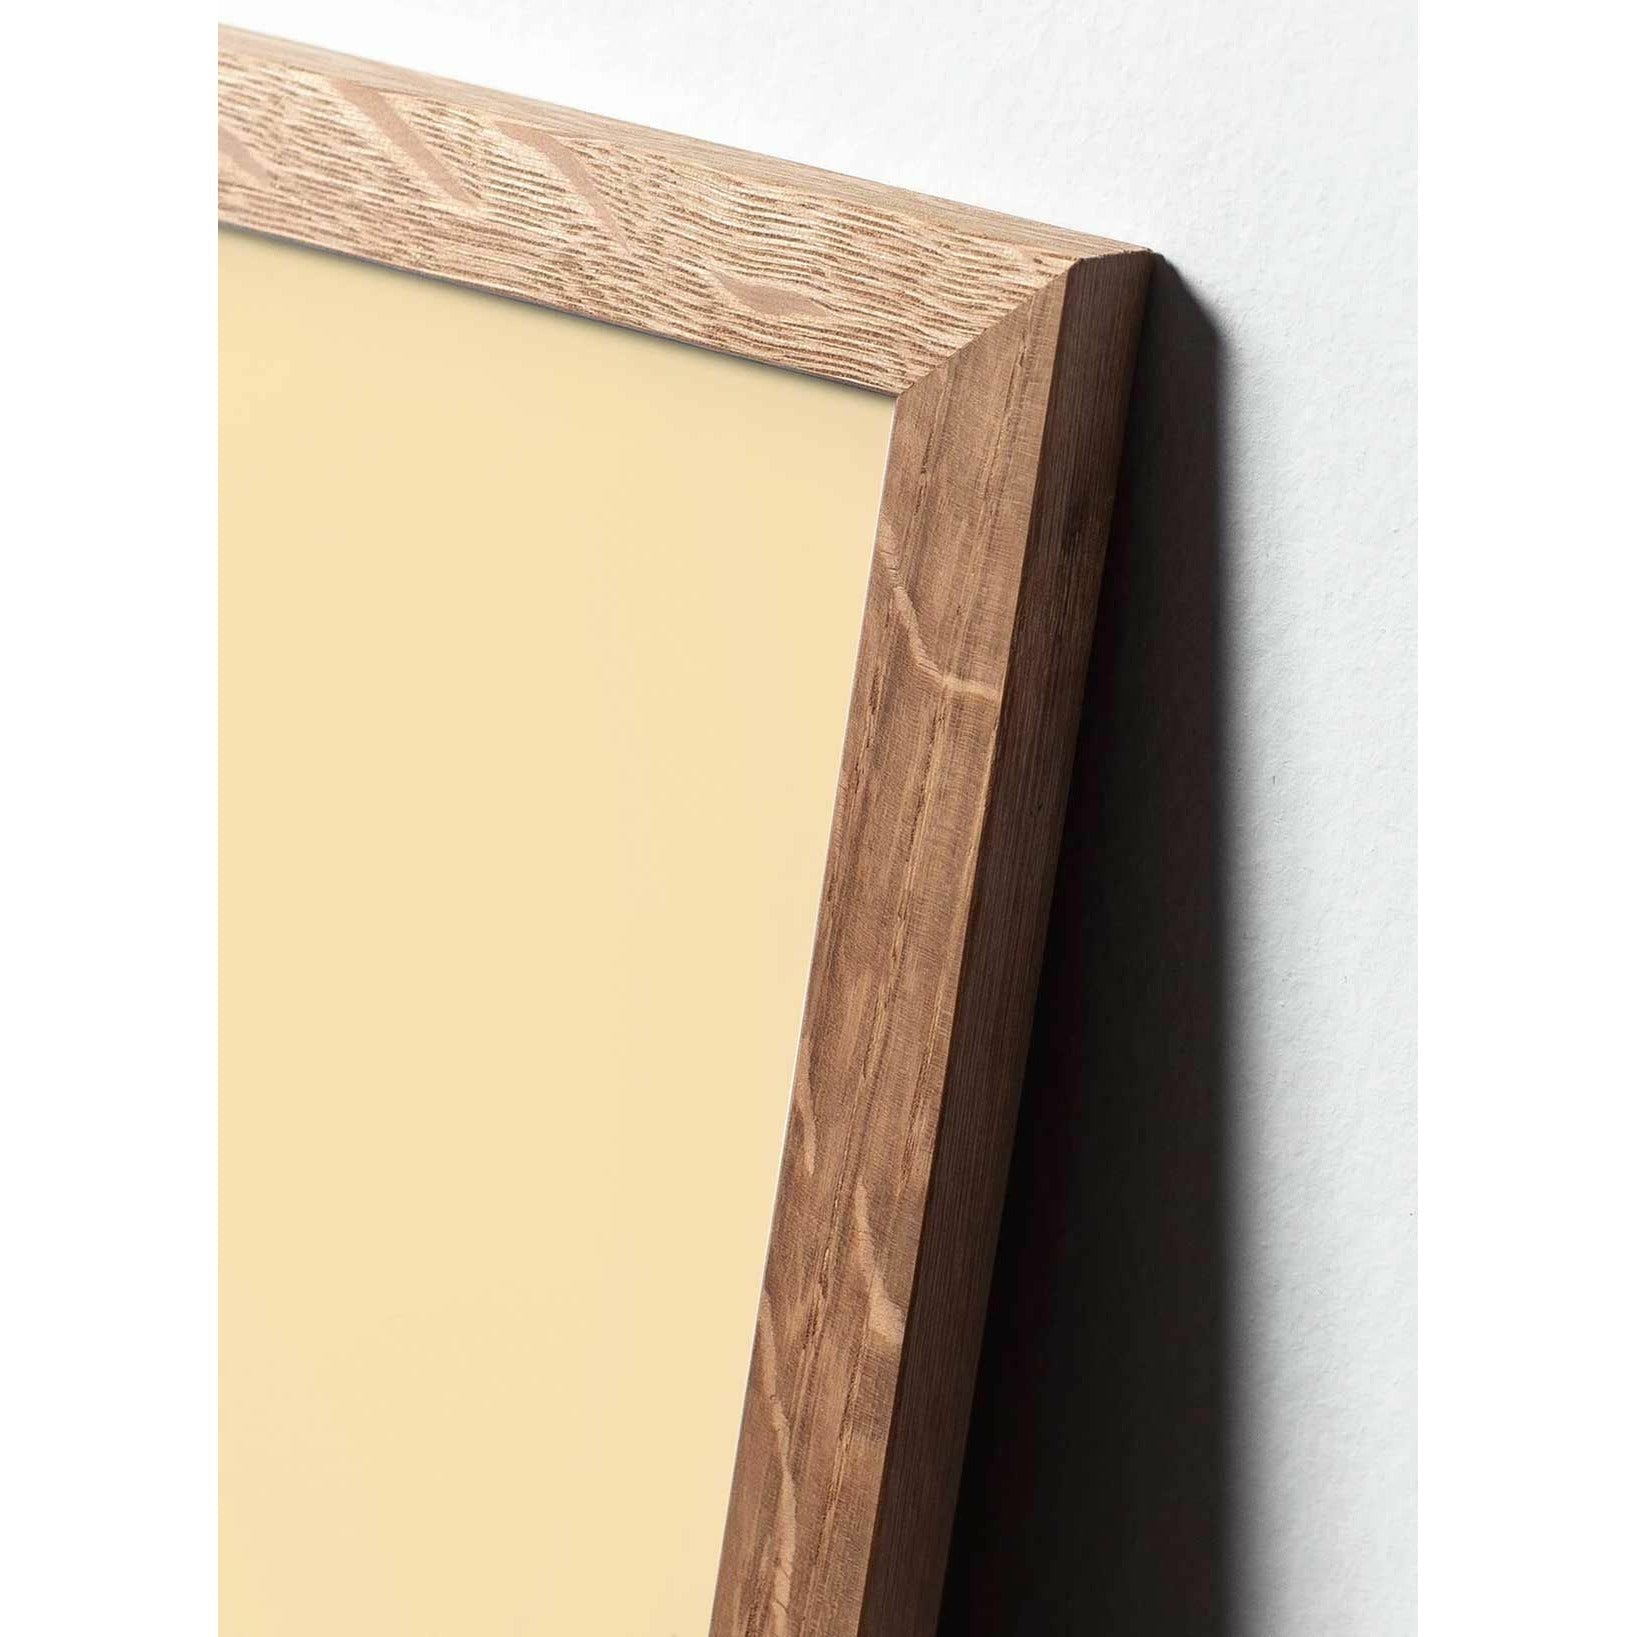 Plakát Pine Cone Line Pine Cone, rám vyrobený z lehkého dřeva 70x100 cm, bílé pozadí